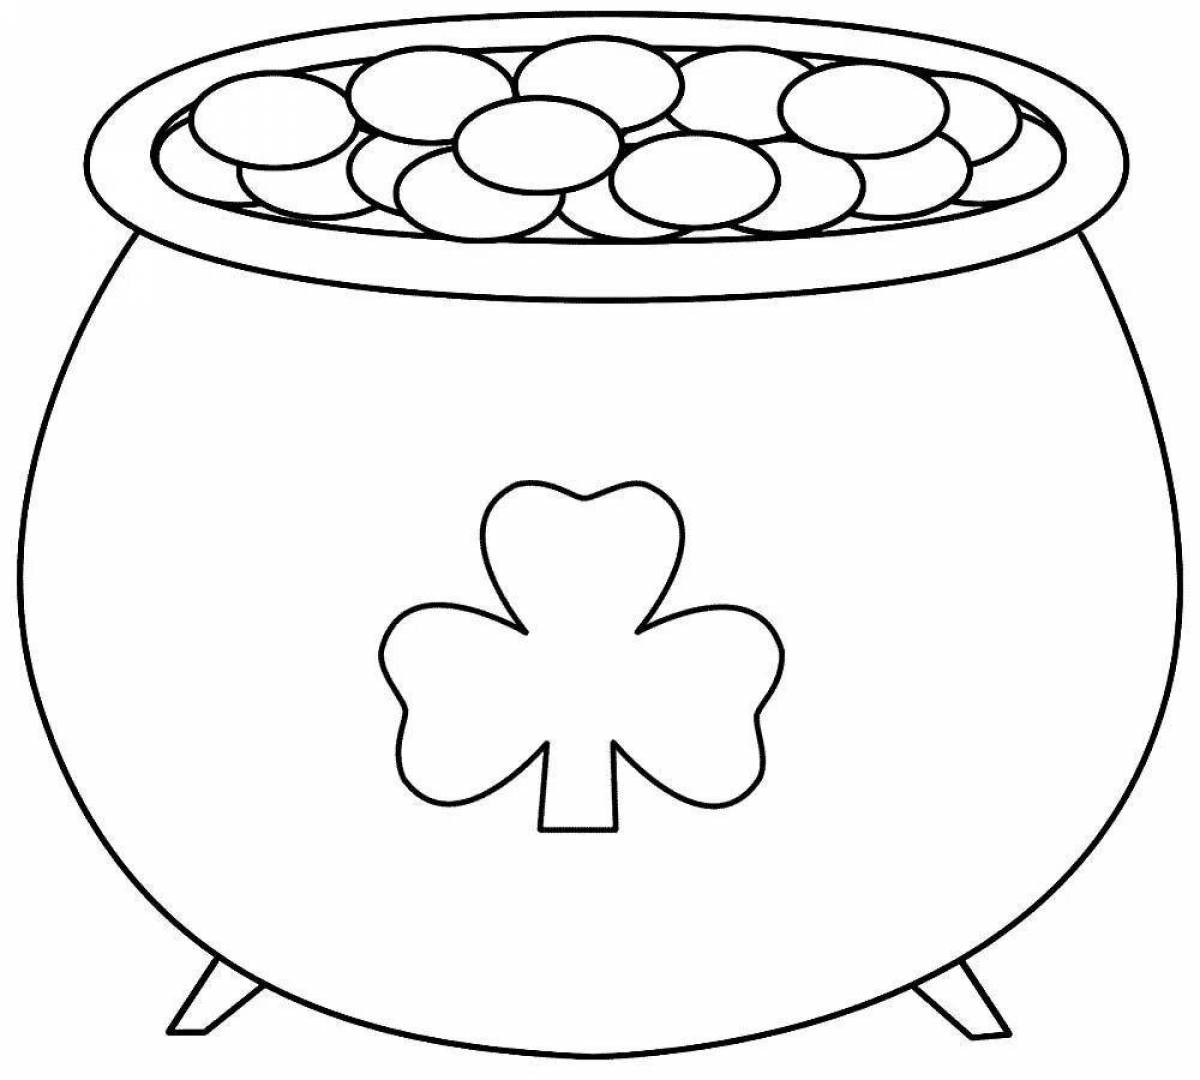 Fun coloring pot